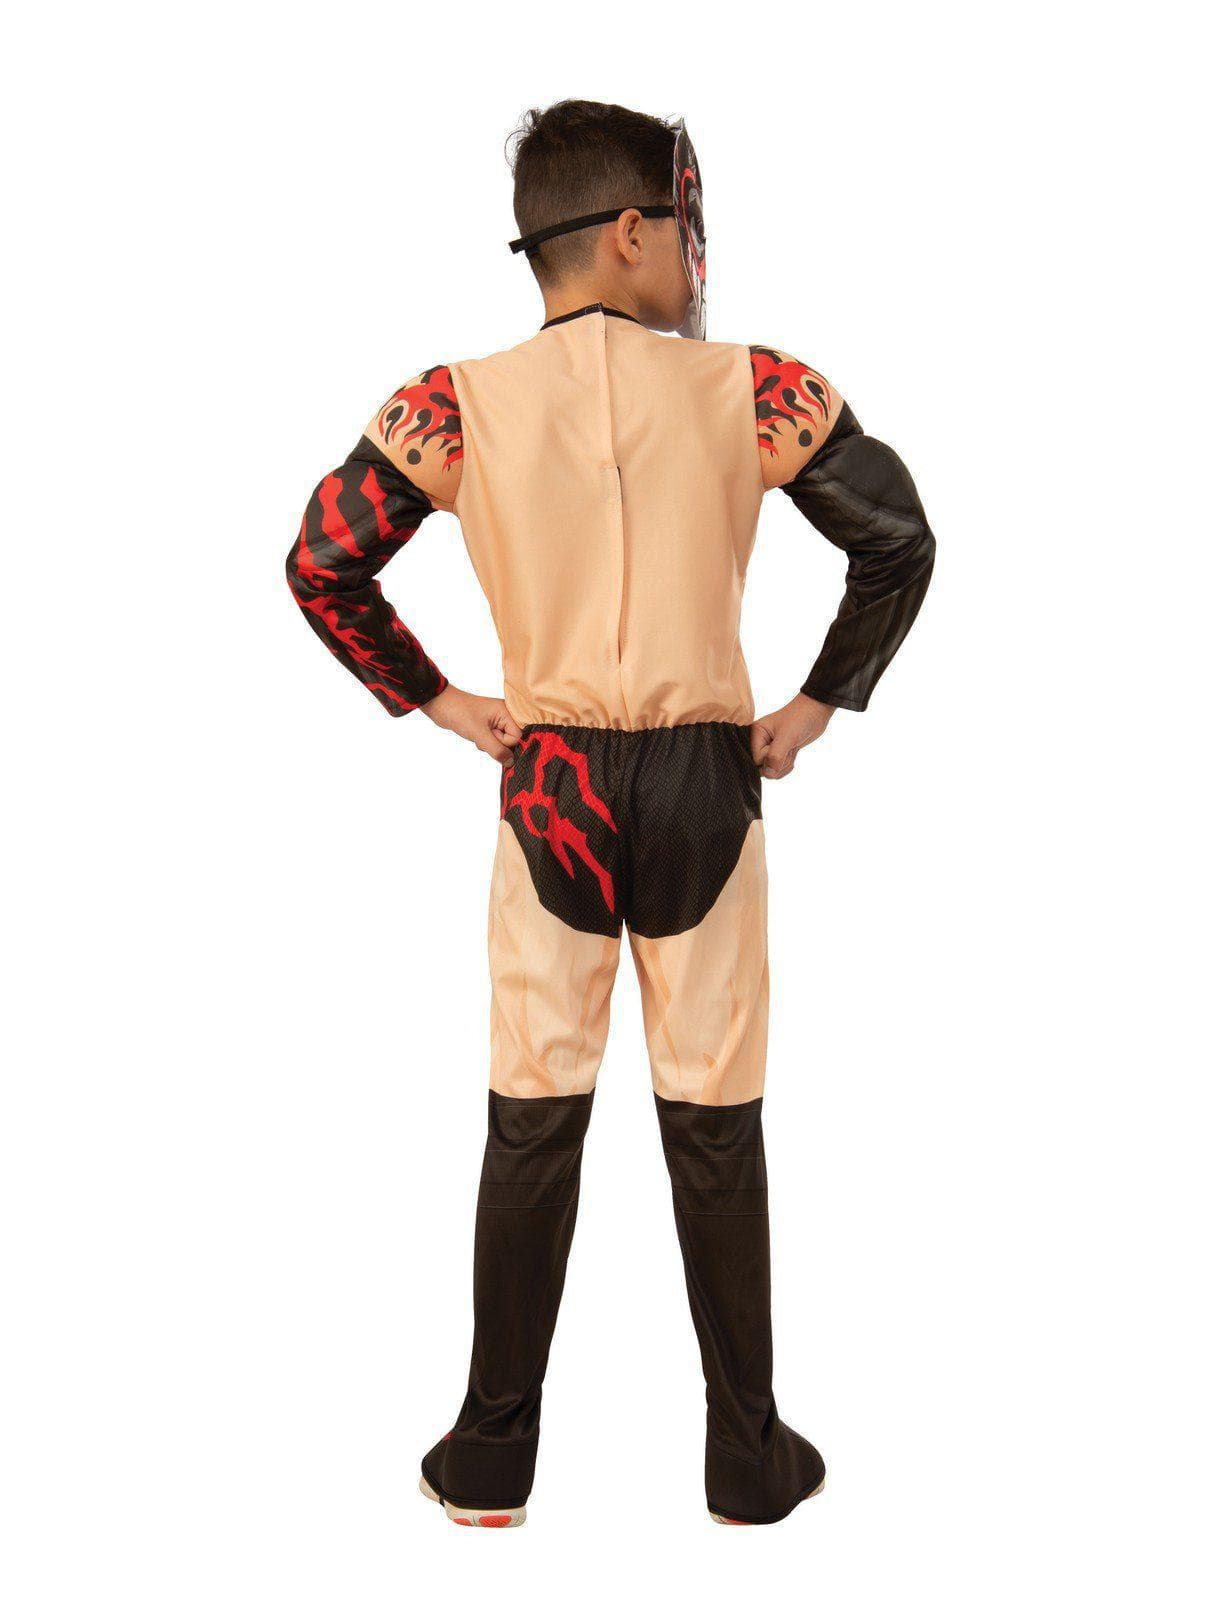 Kids WWE Finn Balor Deluxe Costume - costumes.com